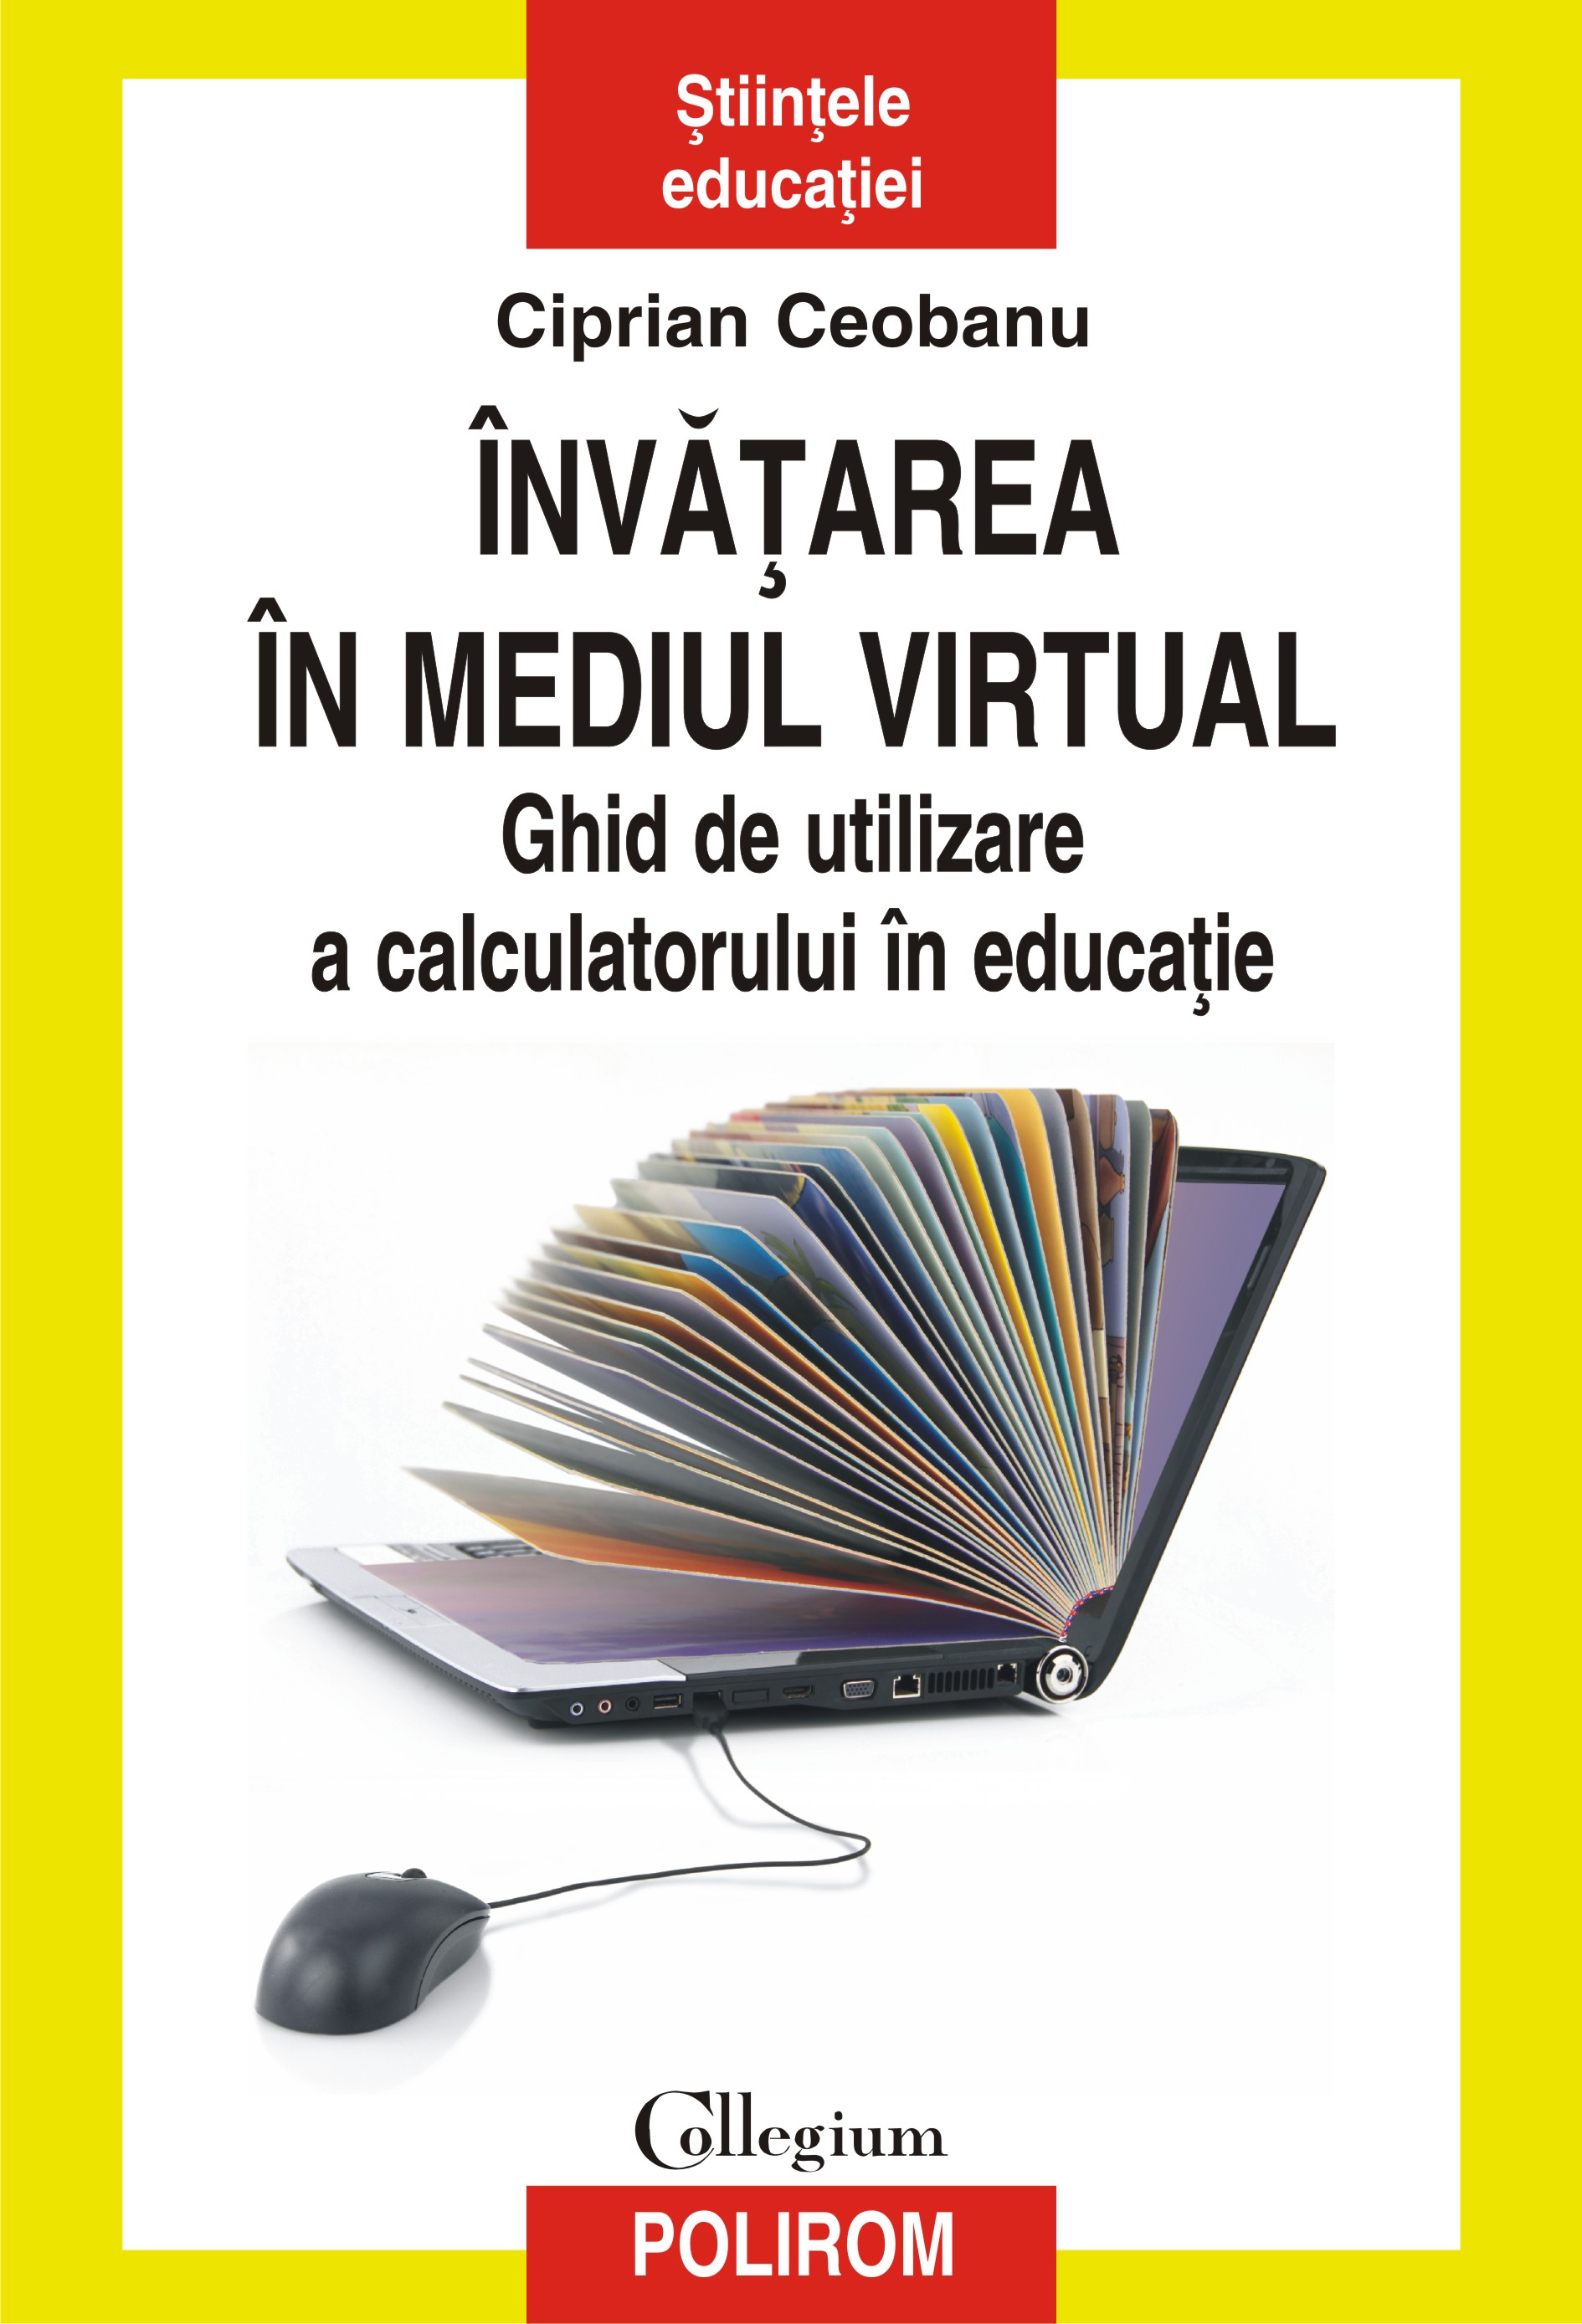 eBook Invatarea in mediul virtual ghid de utilizare a calculatorului in educatie - Ciprian Ceobanu